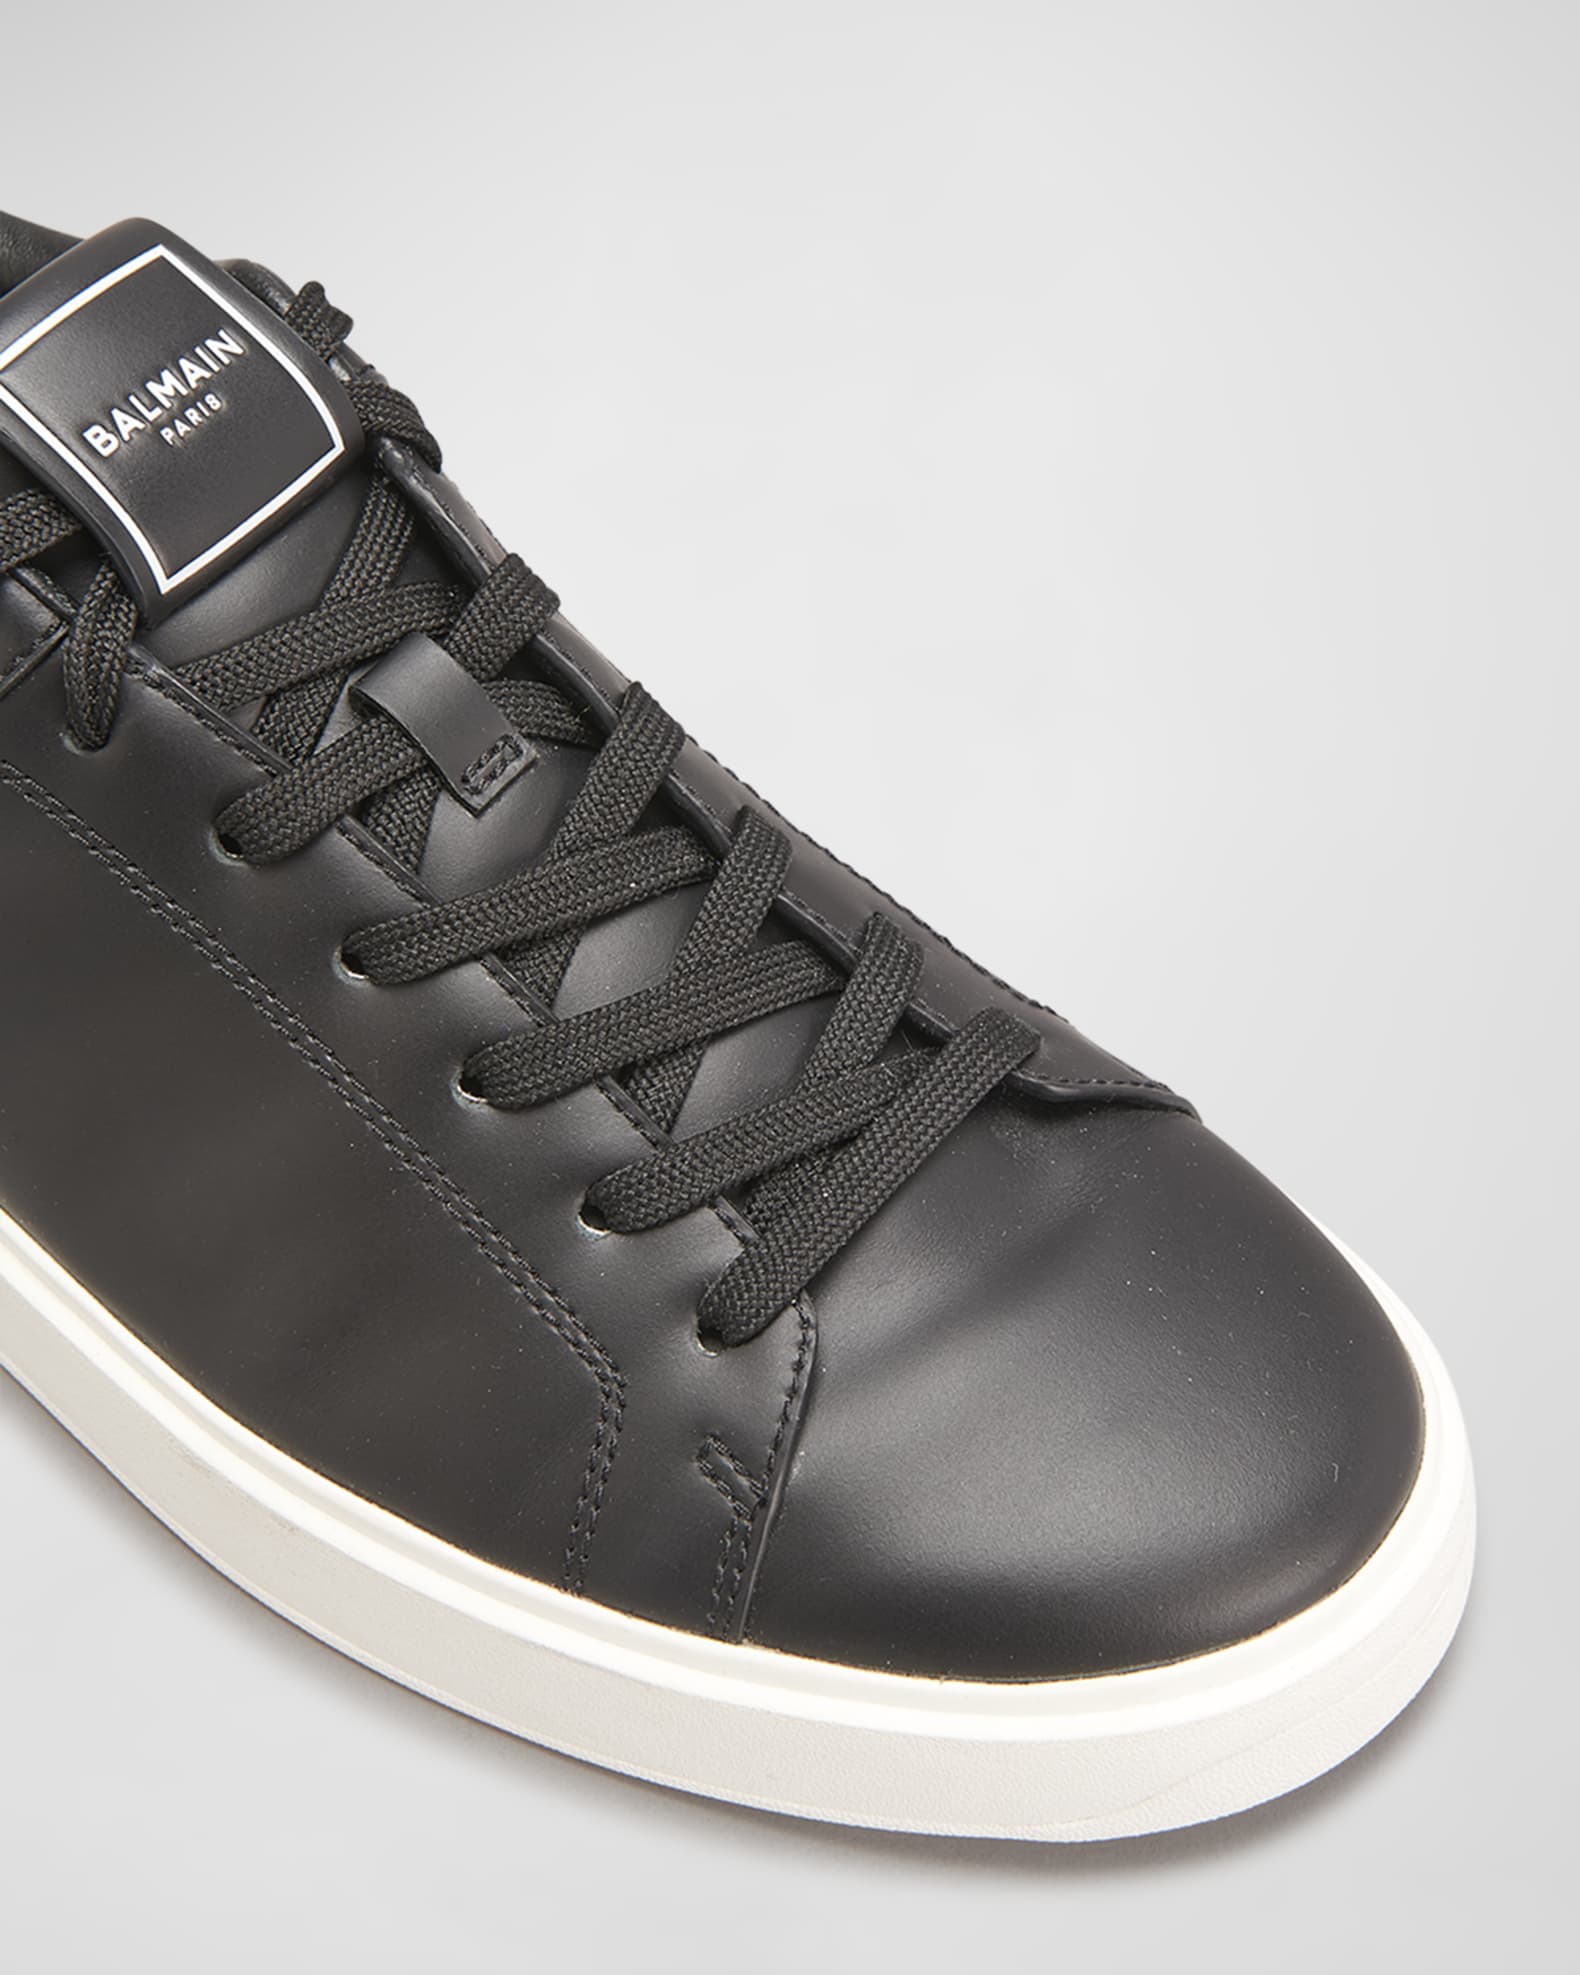 Balmain Men's B-Court Leather Low-Top Sneakers | Neiman Marcus